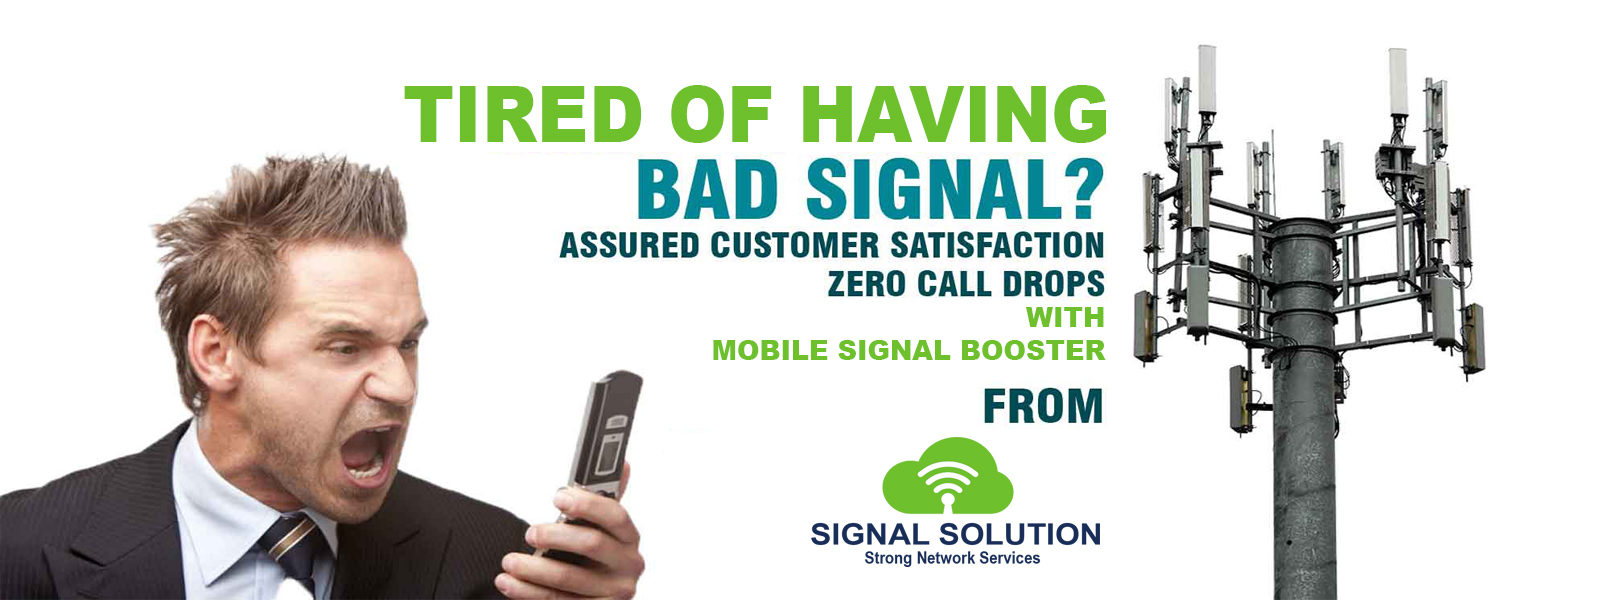 mobile signal Booster in delhi